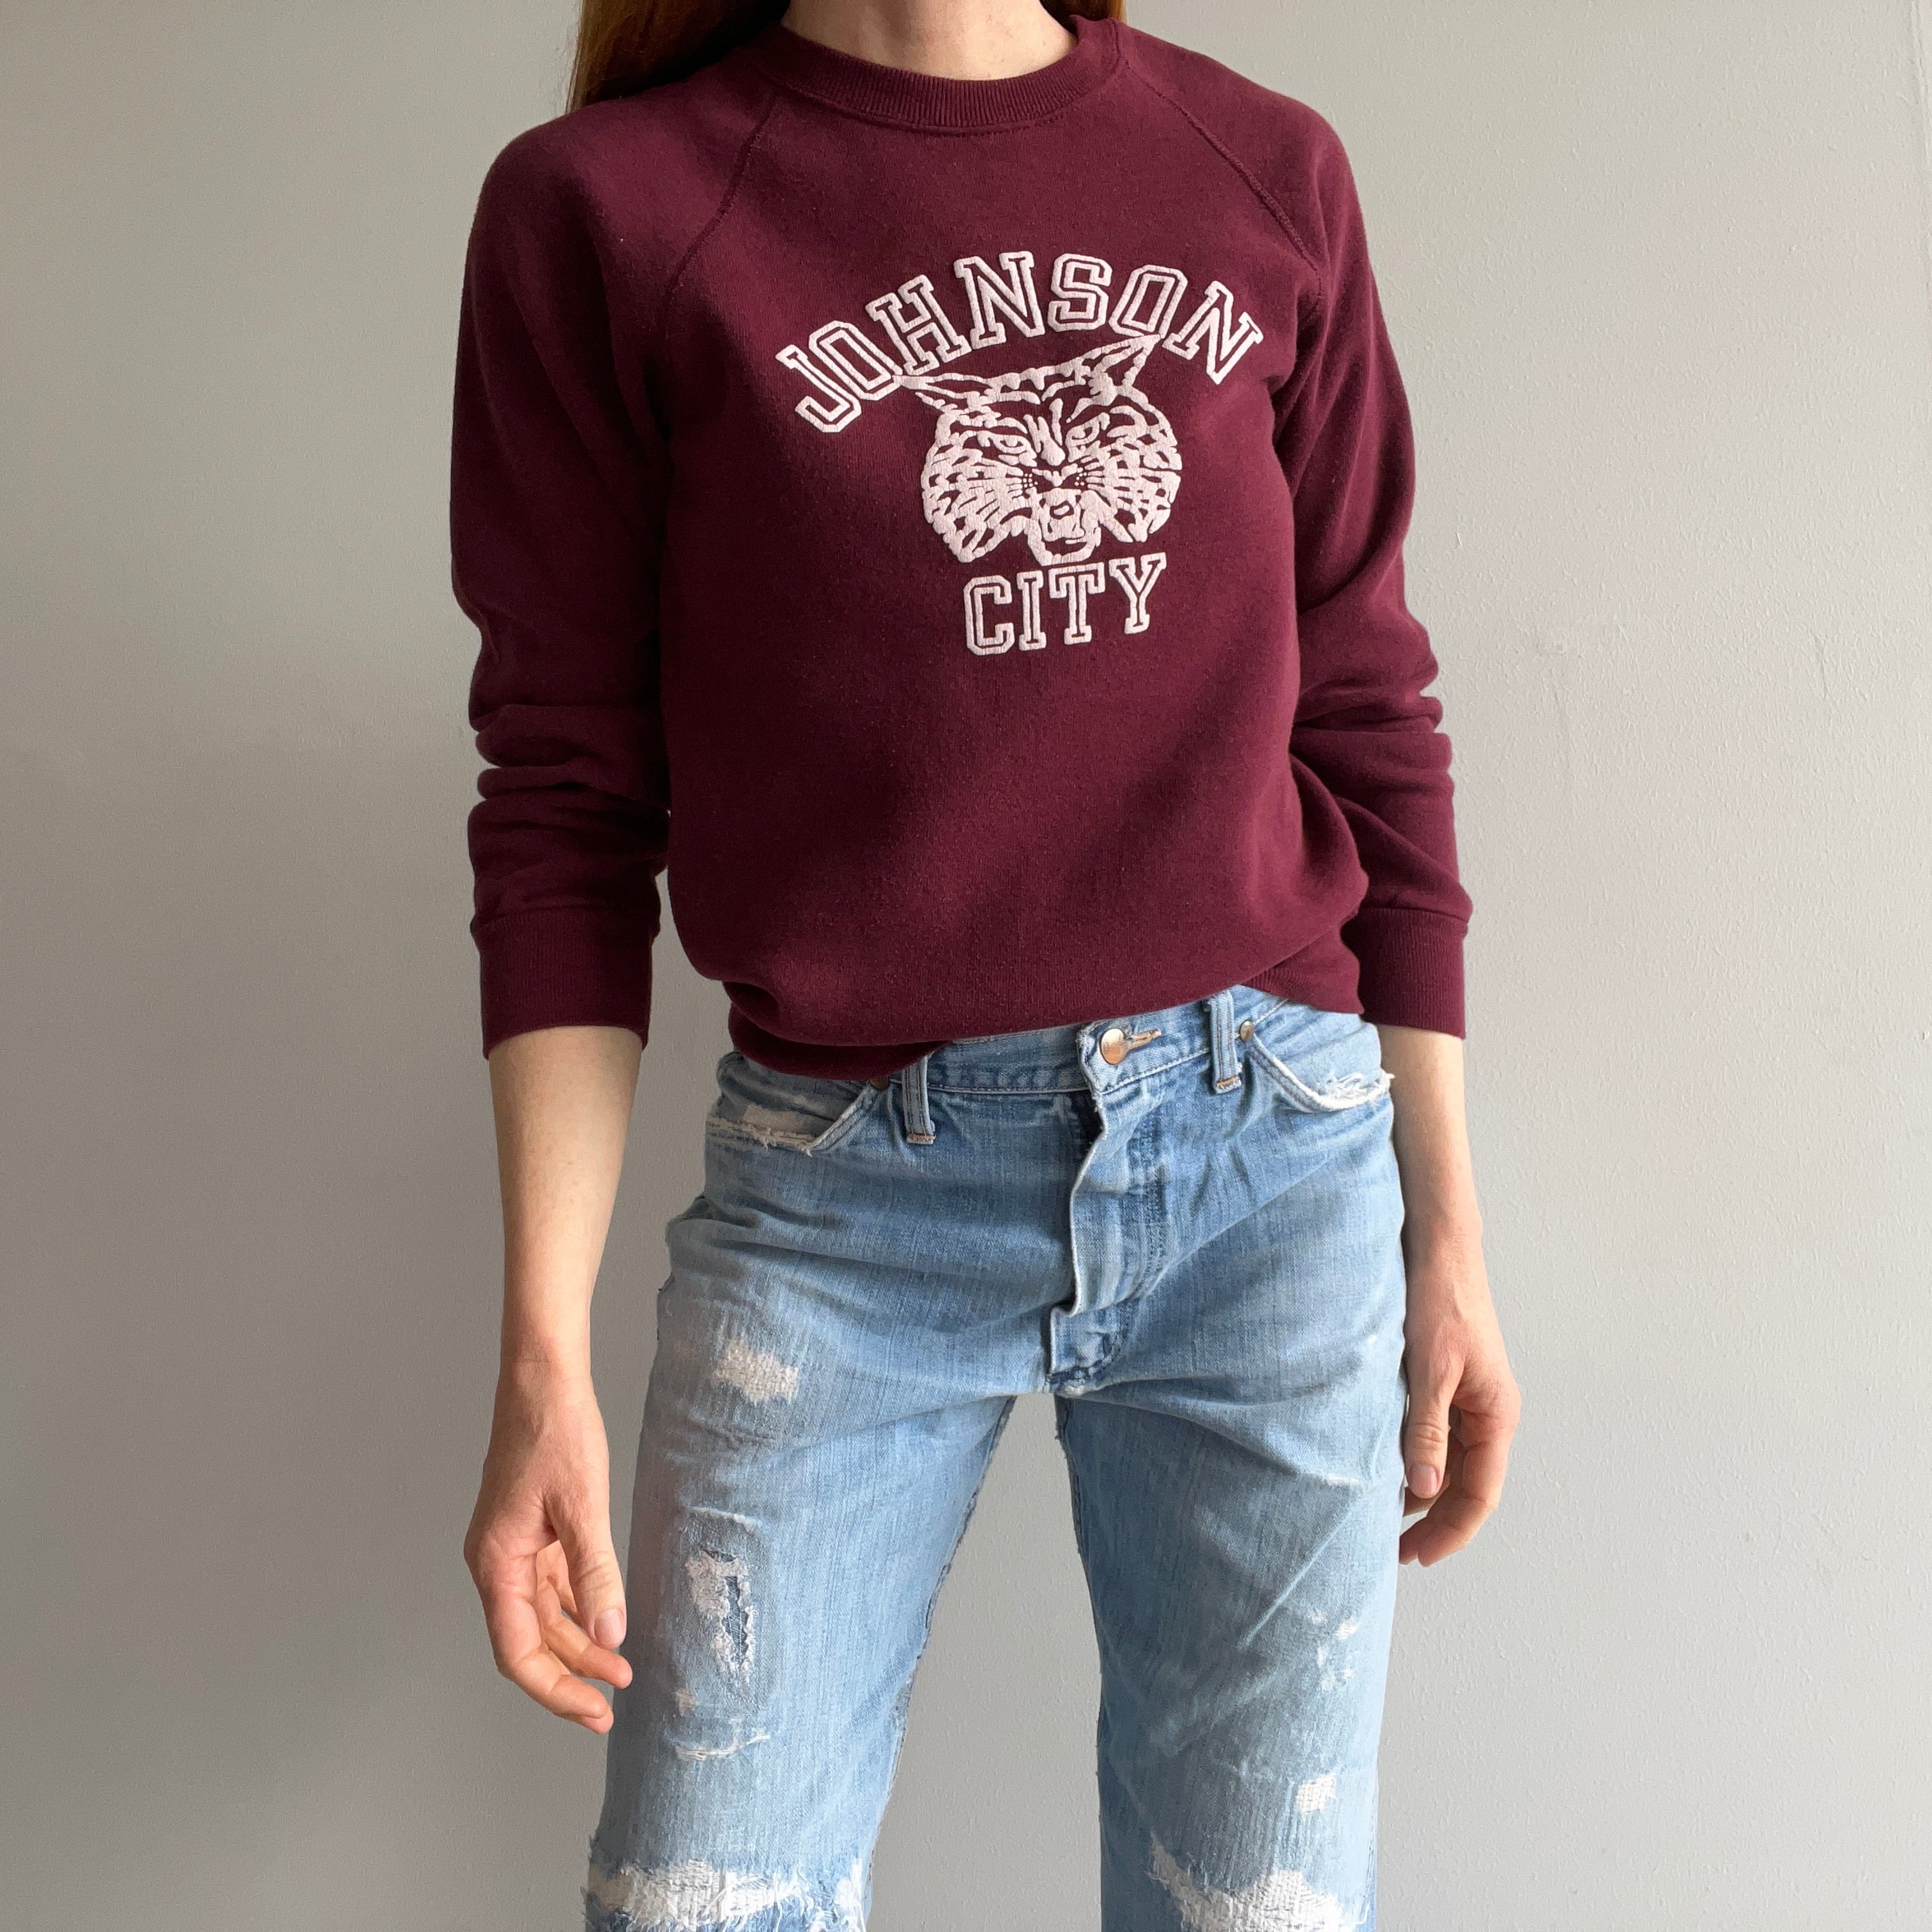 1980s Johnson City Panthers (?) Sweatshirt